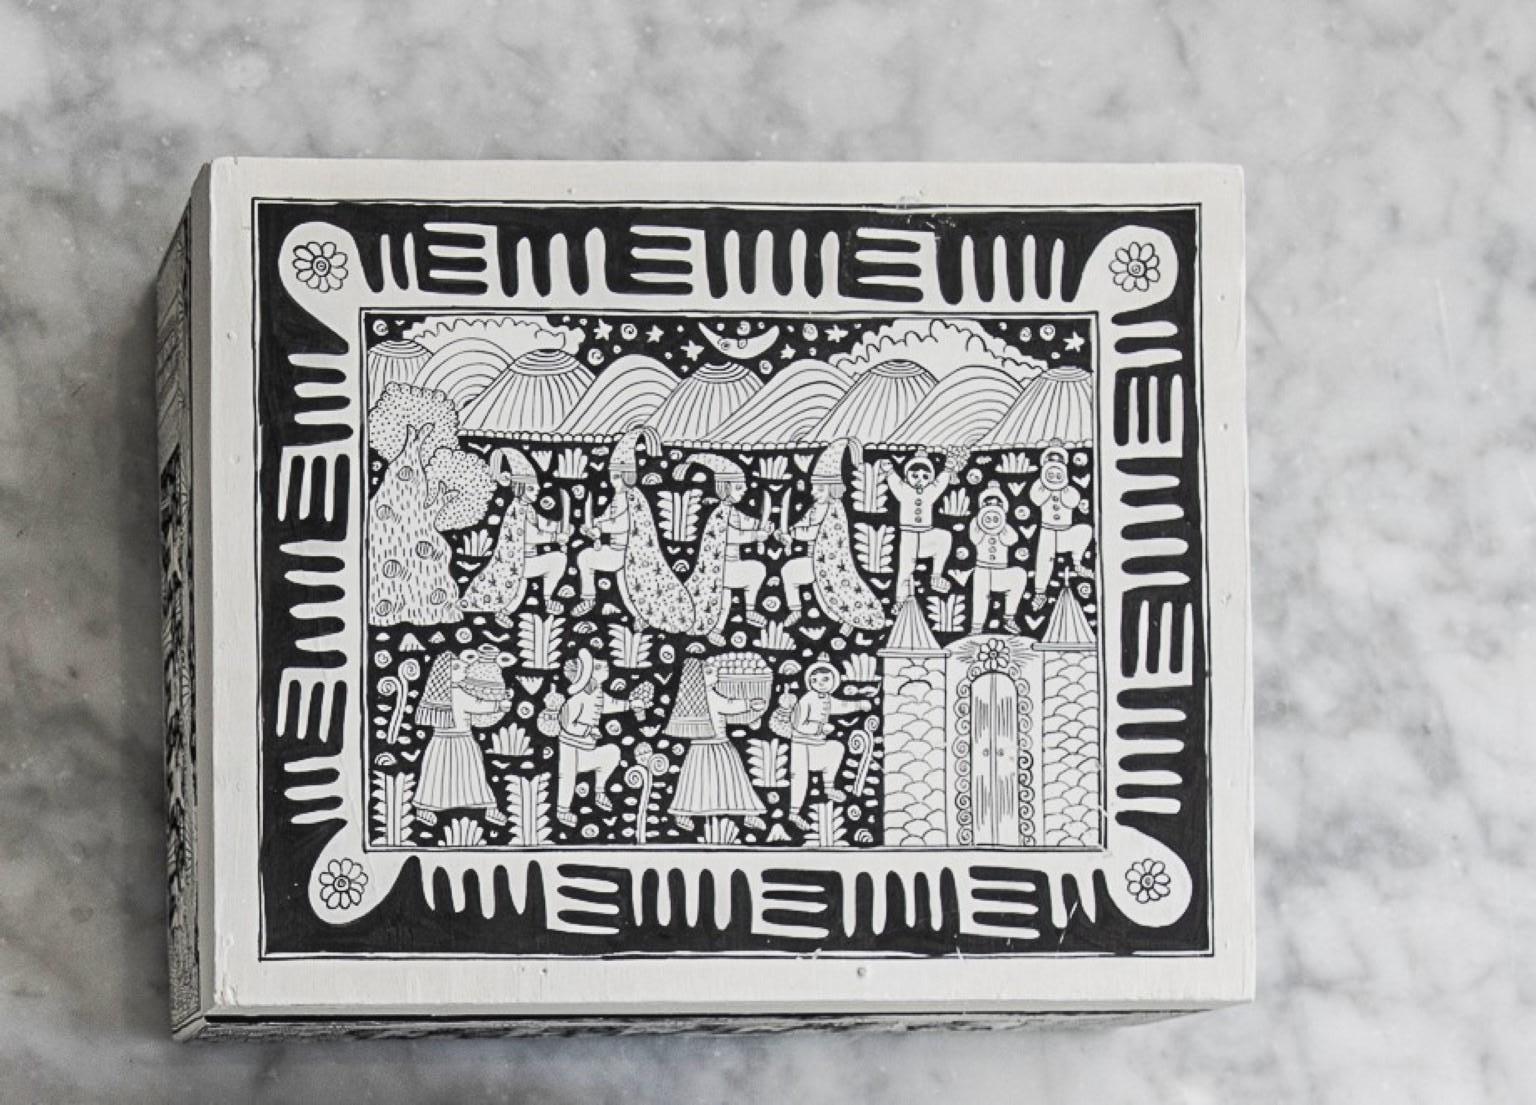 Xalitla-Schachtel von Onora
Abmessungen: 25 x 20 cm
Materialien: Freihand bemaltes Holz

Handbemalte Teedose aus Xalitla, Guerrero. Die auf jedem Stück gemalten Szenen zeigen den Alltag in dieser Region von Guerrero, von der Landwirtschaft bis